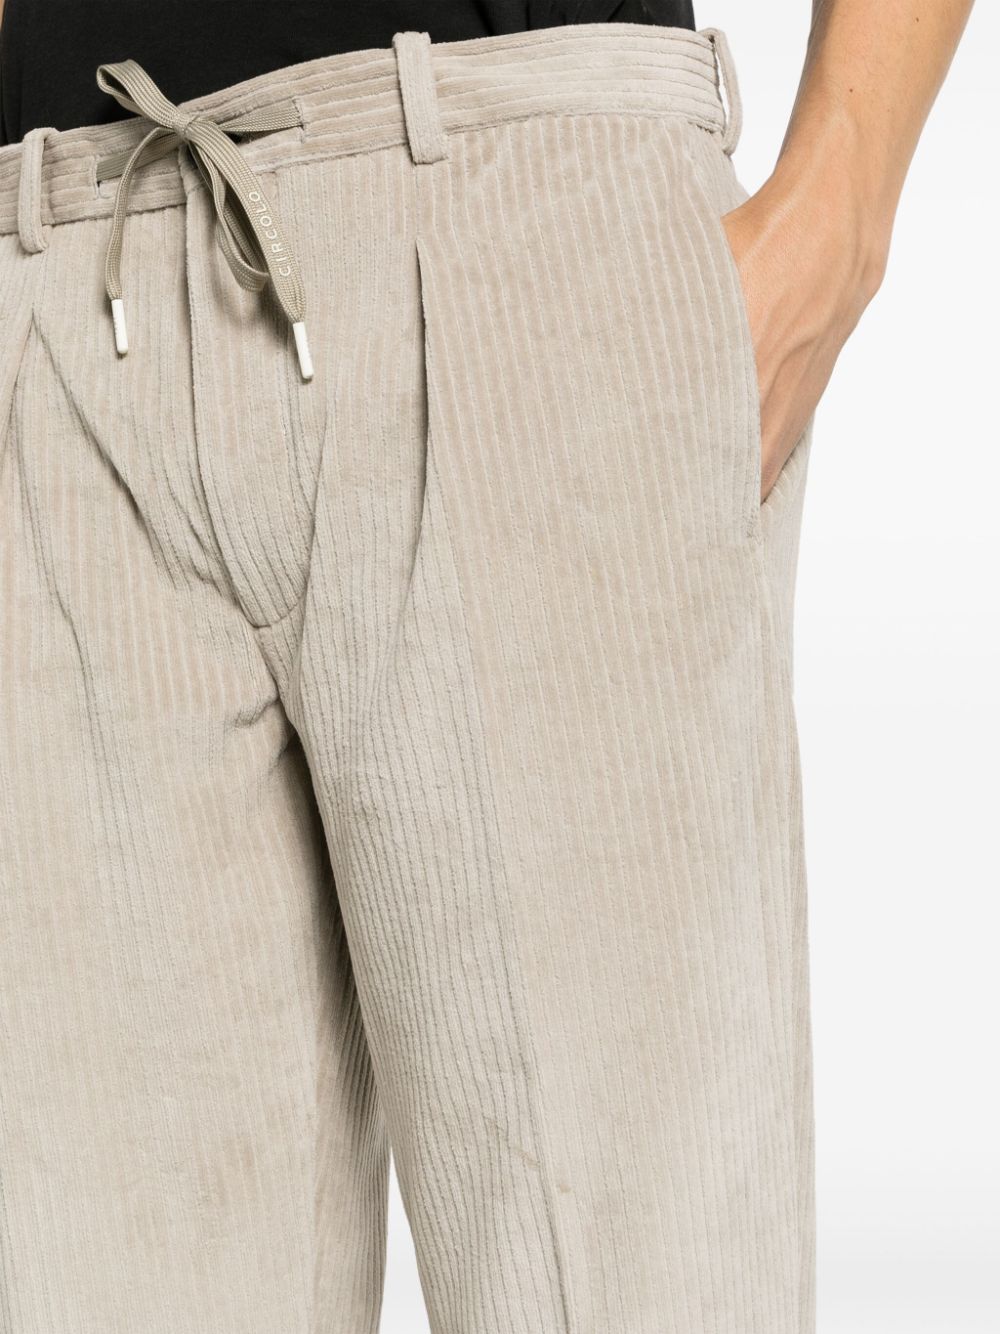 Circolo 1901 Trousers Grey